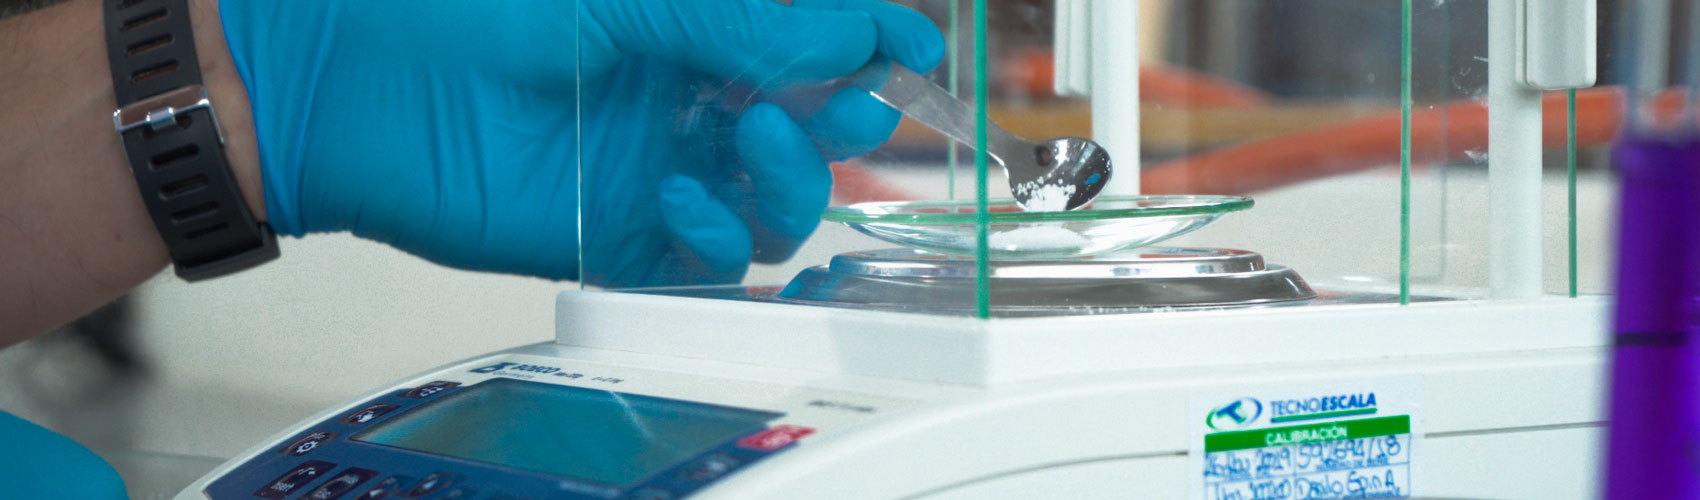 Herramientas de los laboratorios de Biotecnología